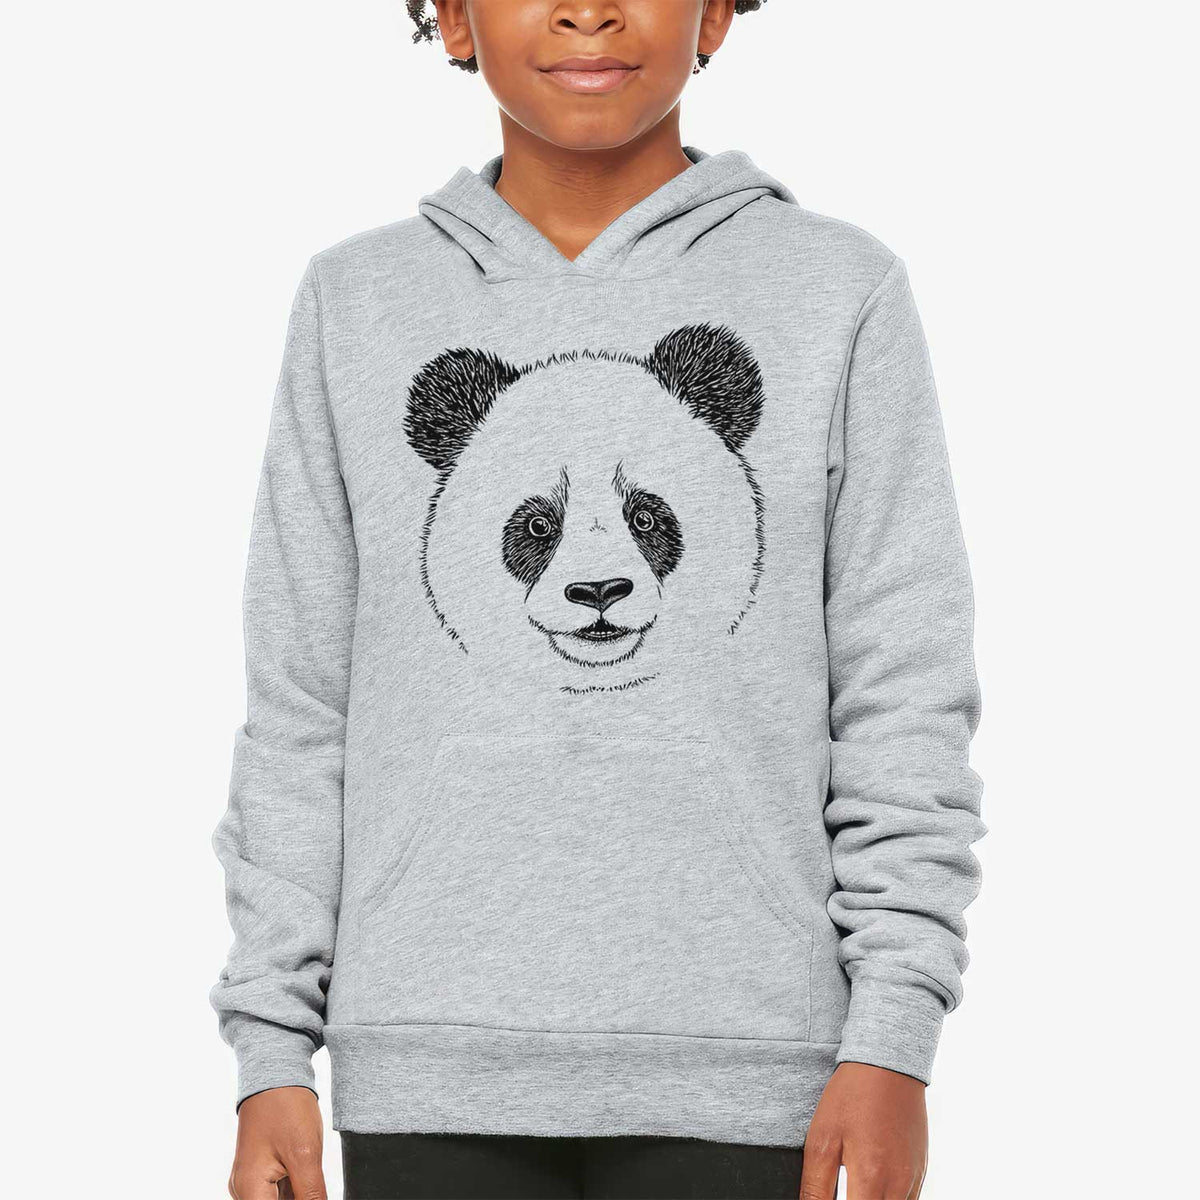 Giant Panda - Youth Hoodie Sweatshirt